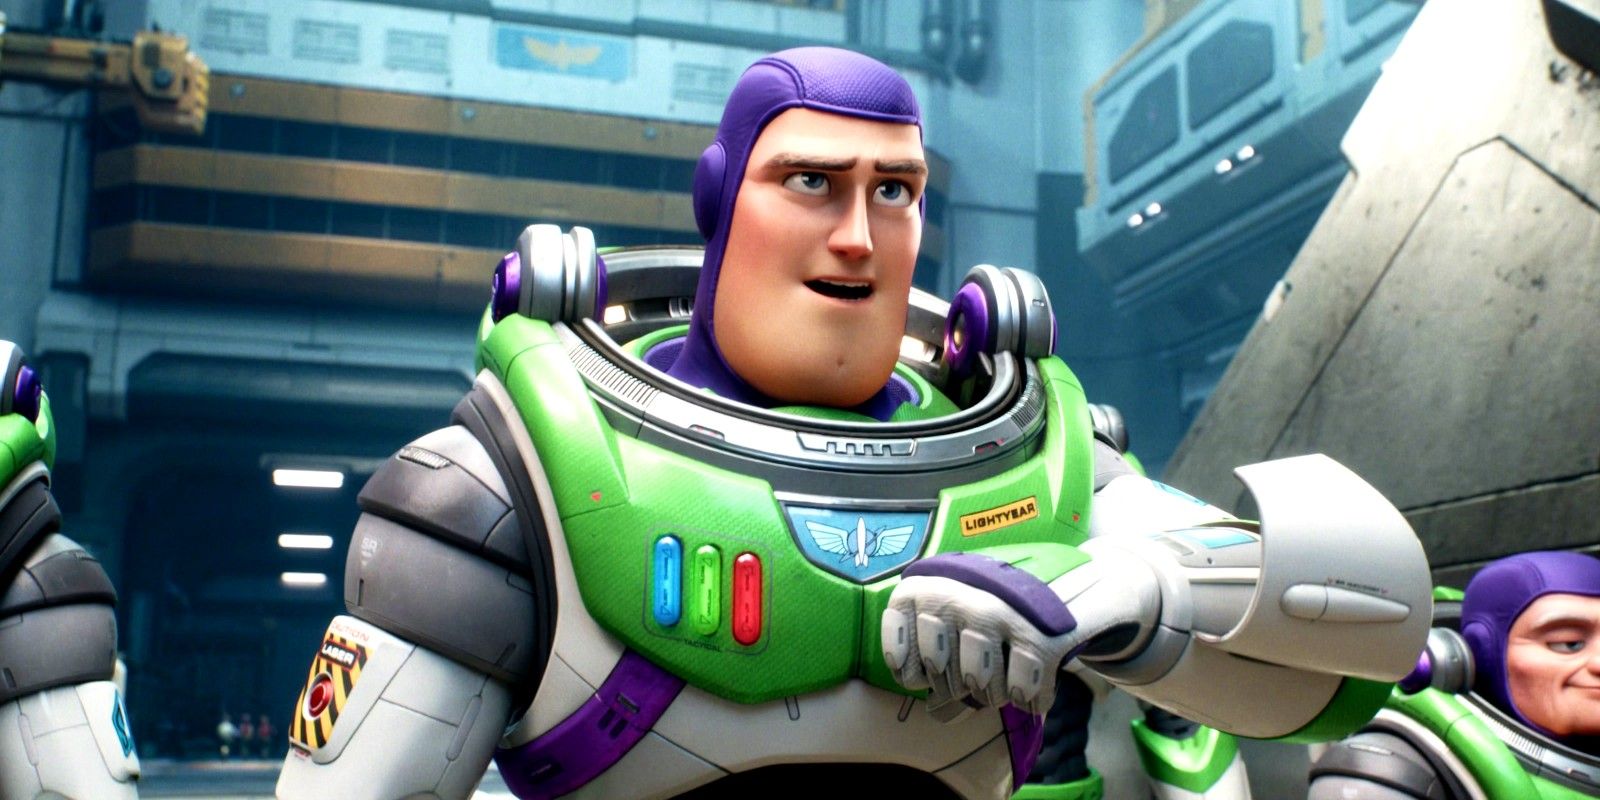 El traje de tamaño real de Buzz Lightyear da vida al héroe de Pixar en un épico vídeo de cosplay de Toy Story